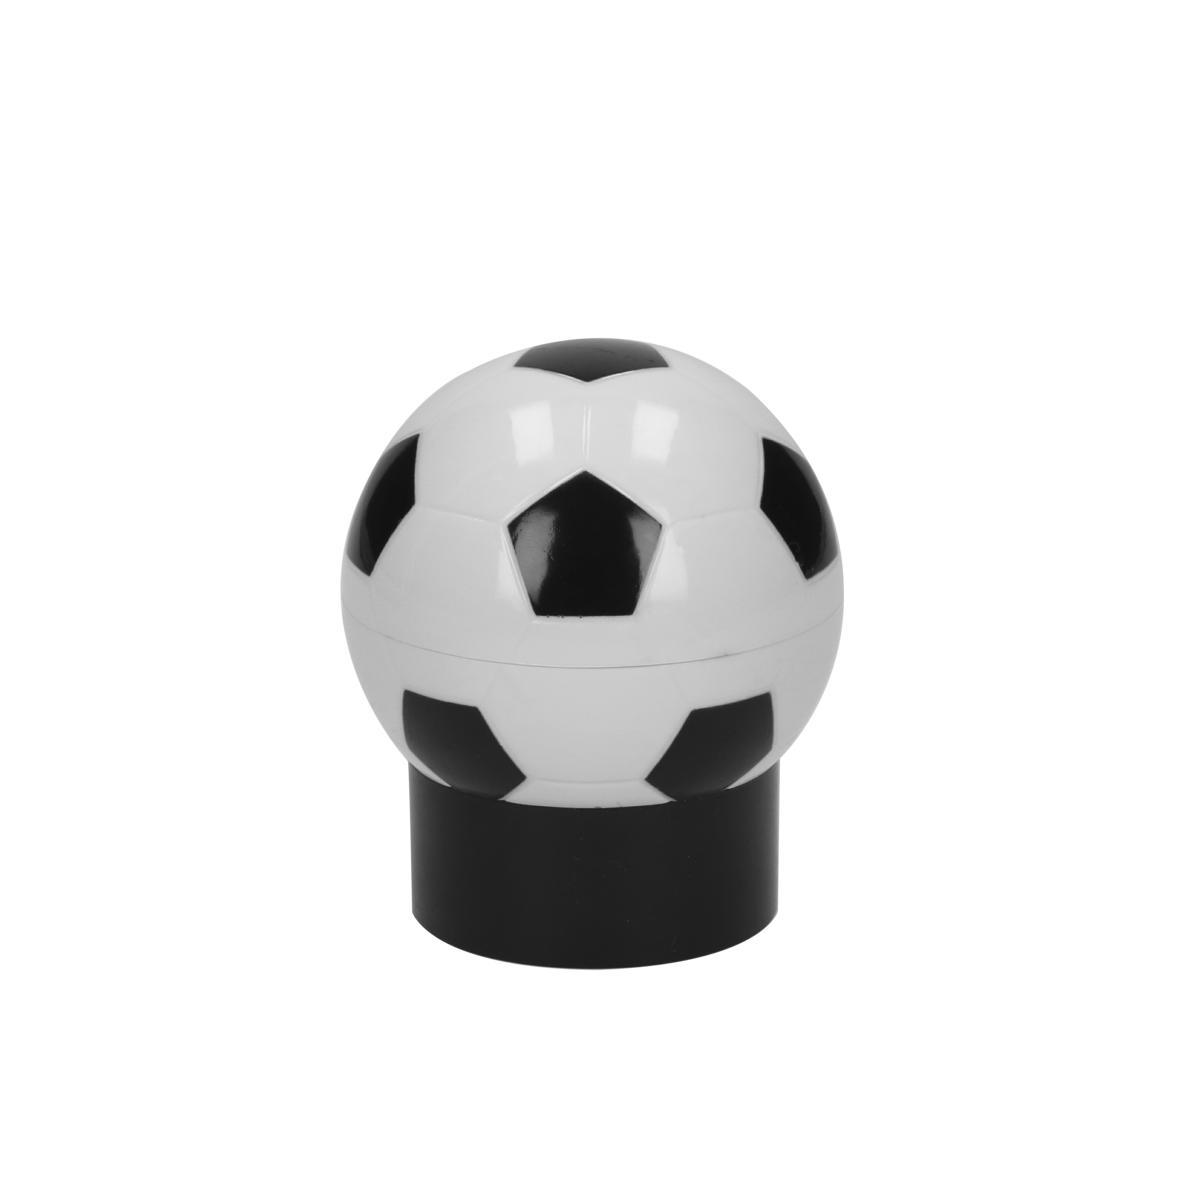 Ouvre-bouteille en forme de football avec fonction push-up - Tréméven - Zaprinta France